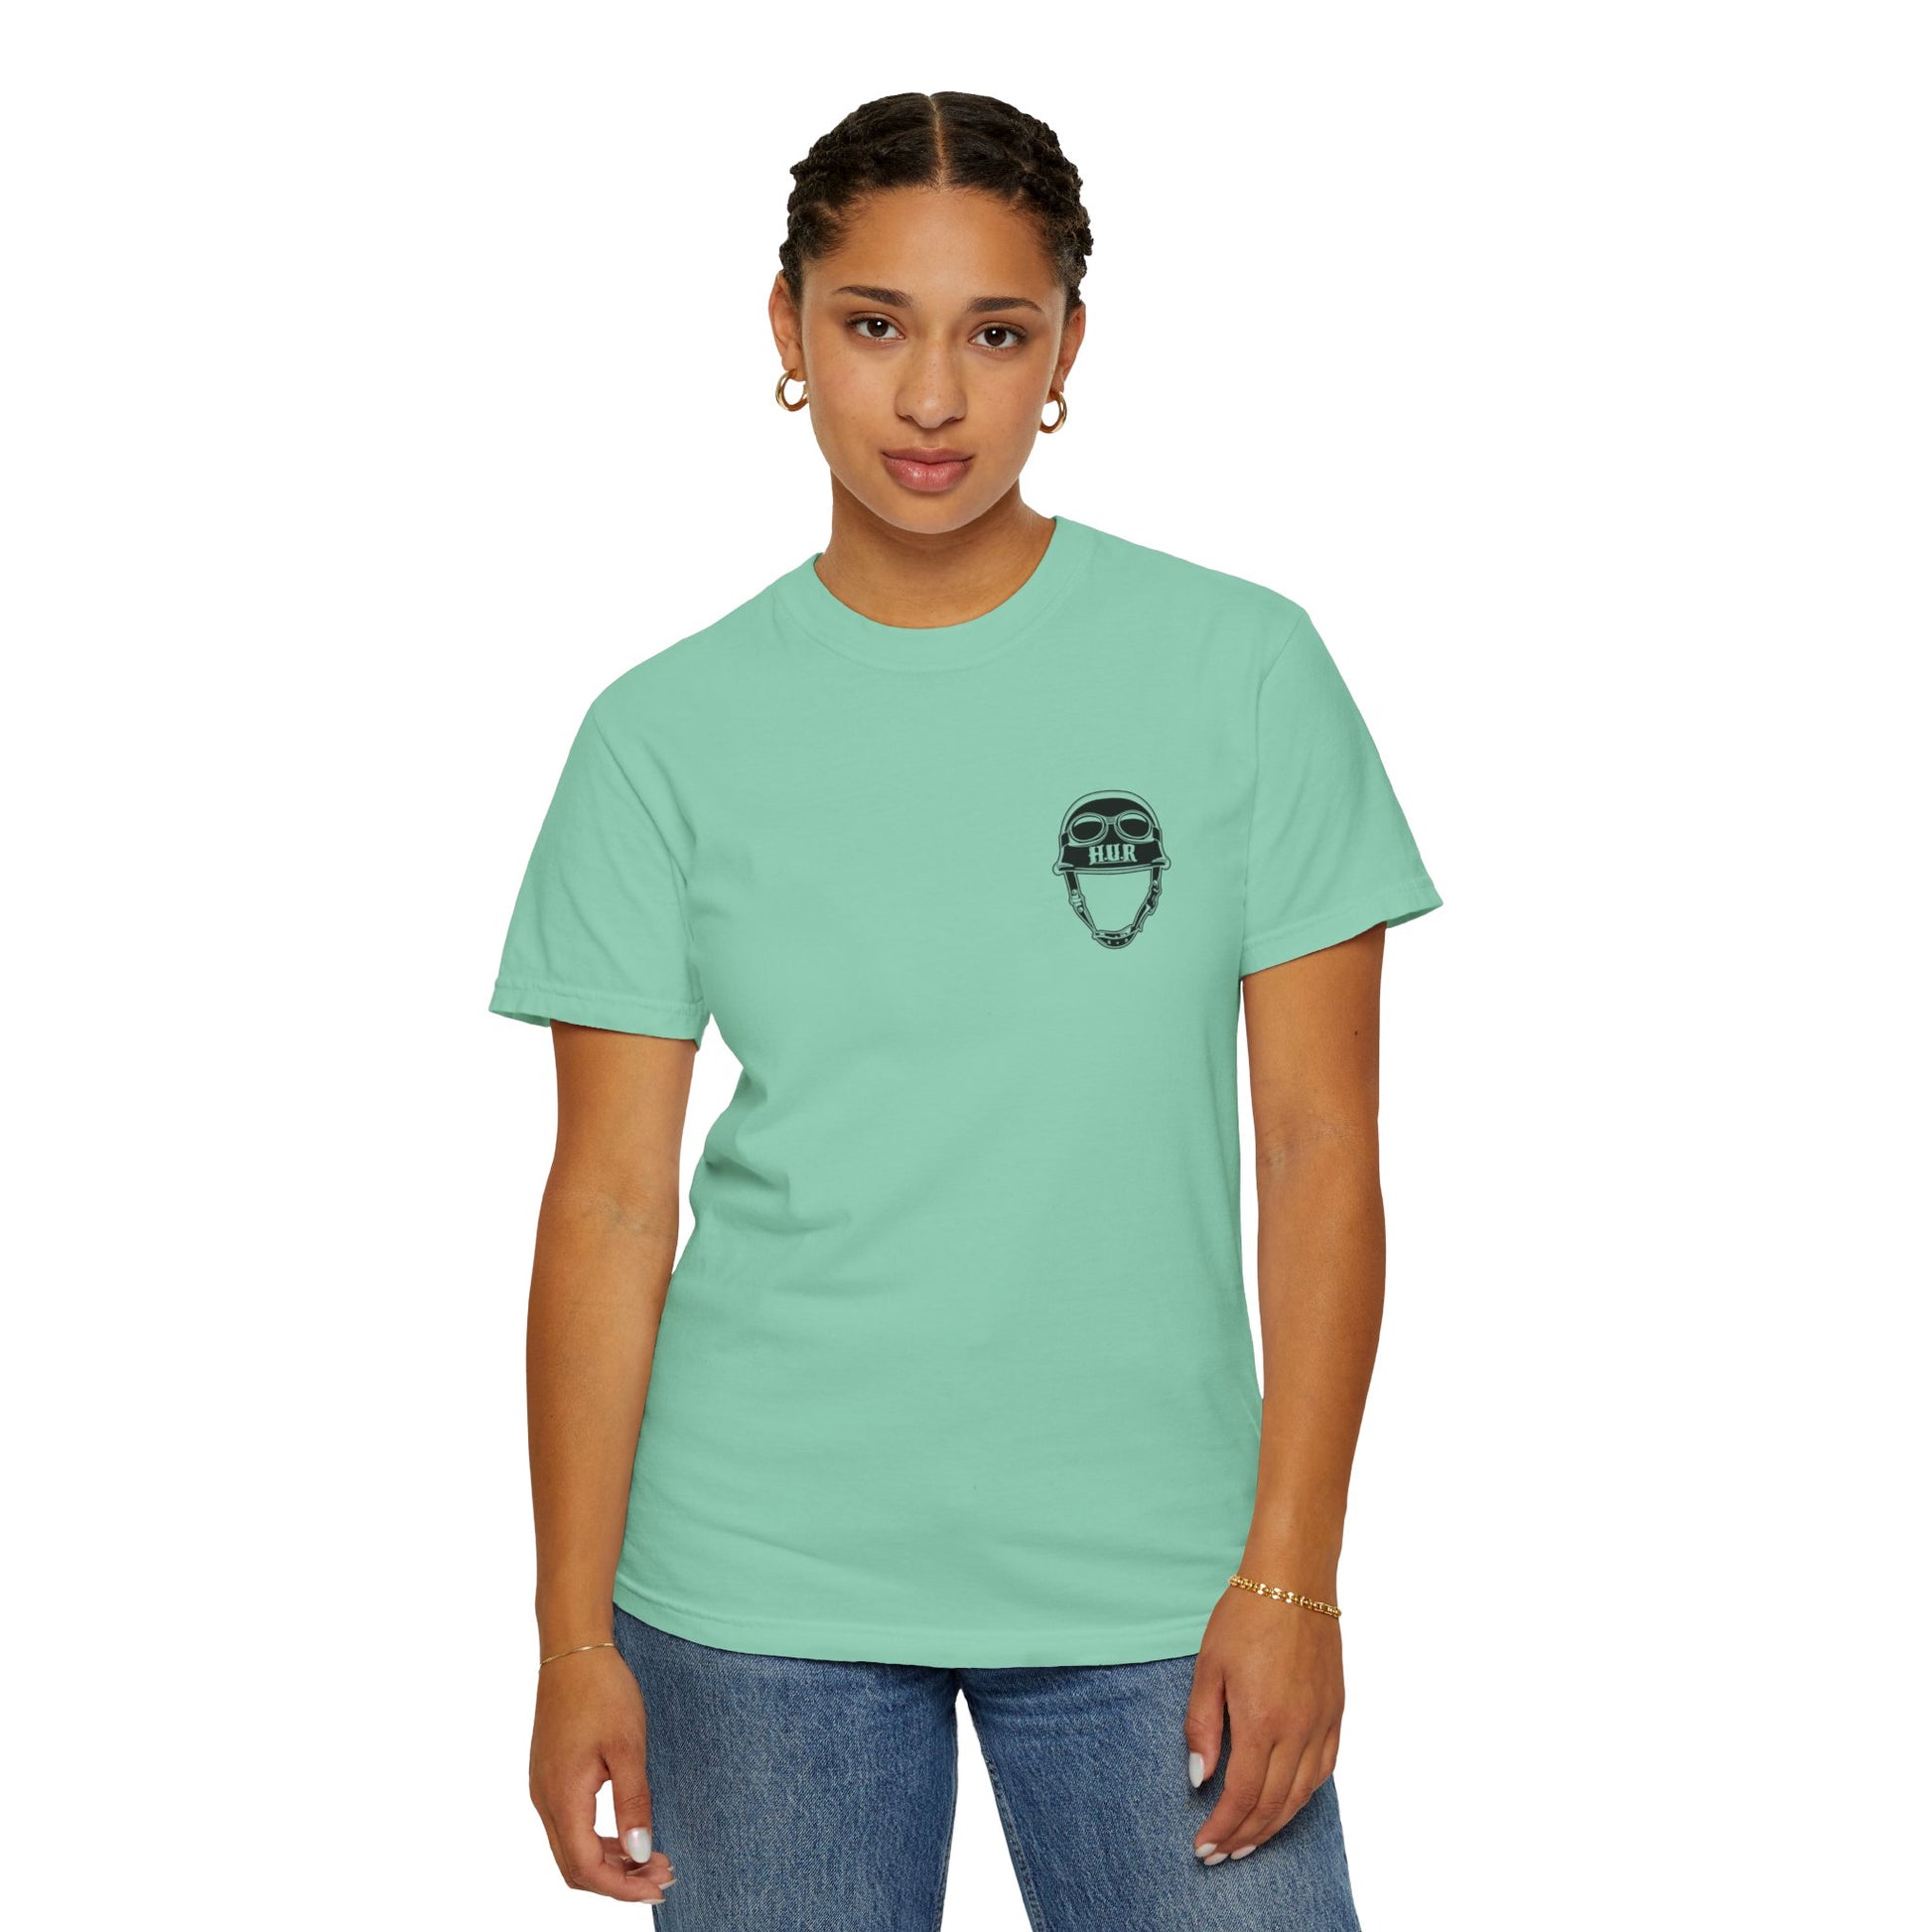 How U Rydin Unisex Garment-Dyed  green T-shirt